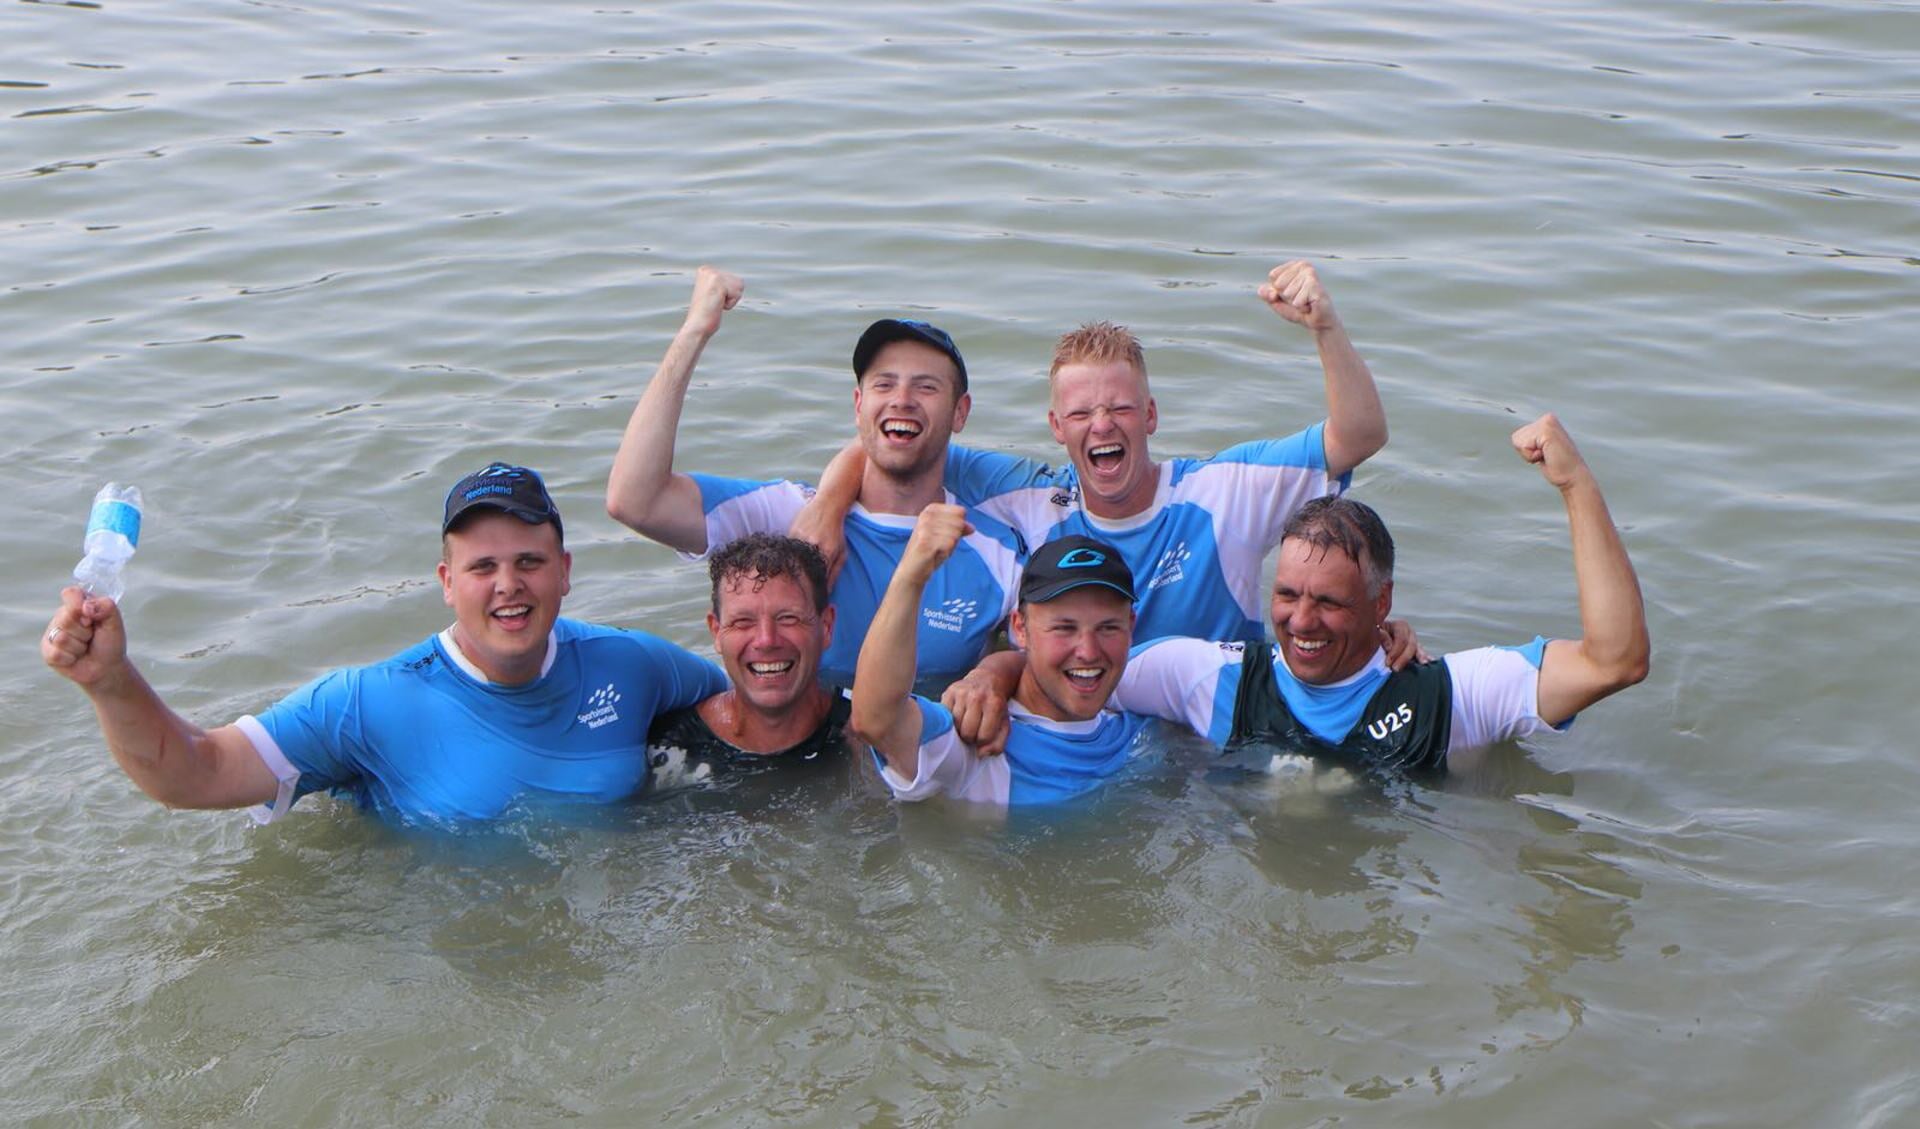 De gouden U25-ploeg dook van geluk het water in! (Foto: aangeleverd)